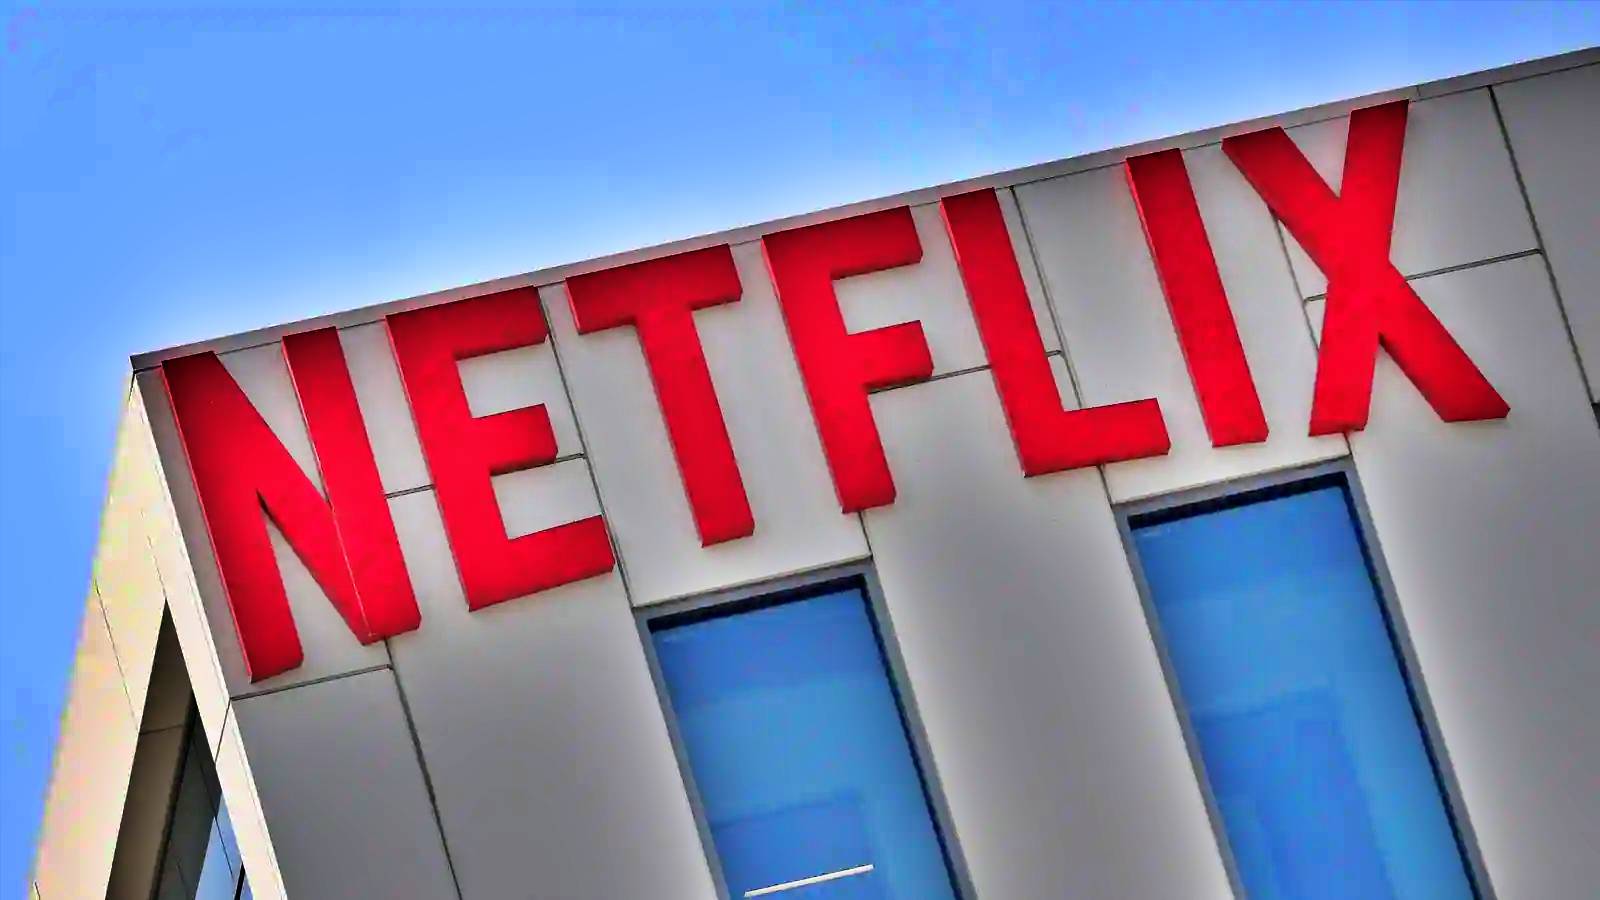 Netflix anuncia las películas MÁS POPULARES la semana pasada